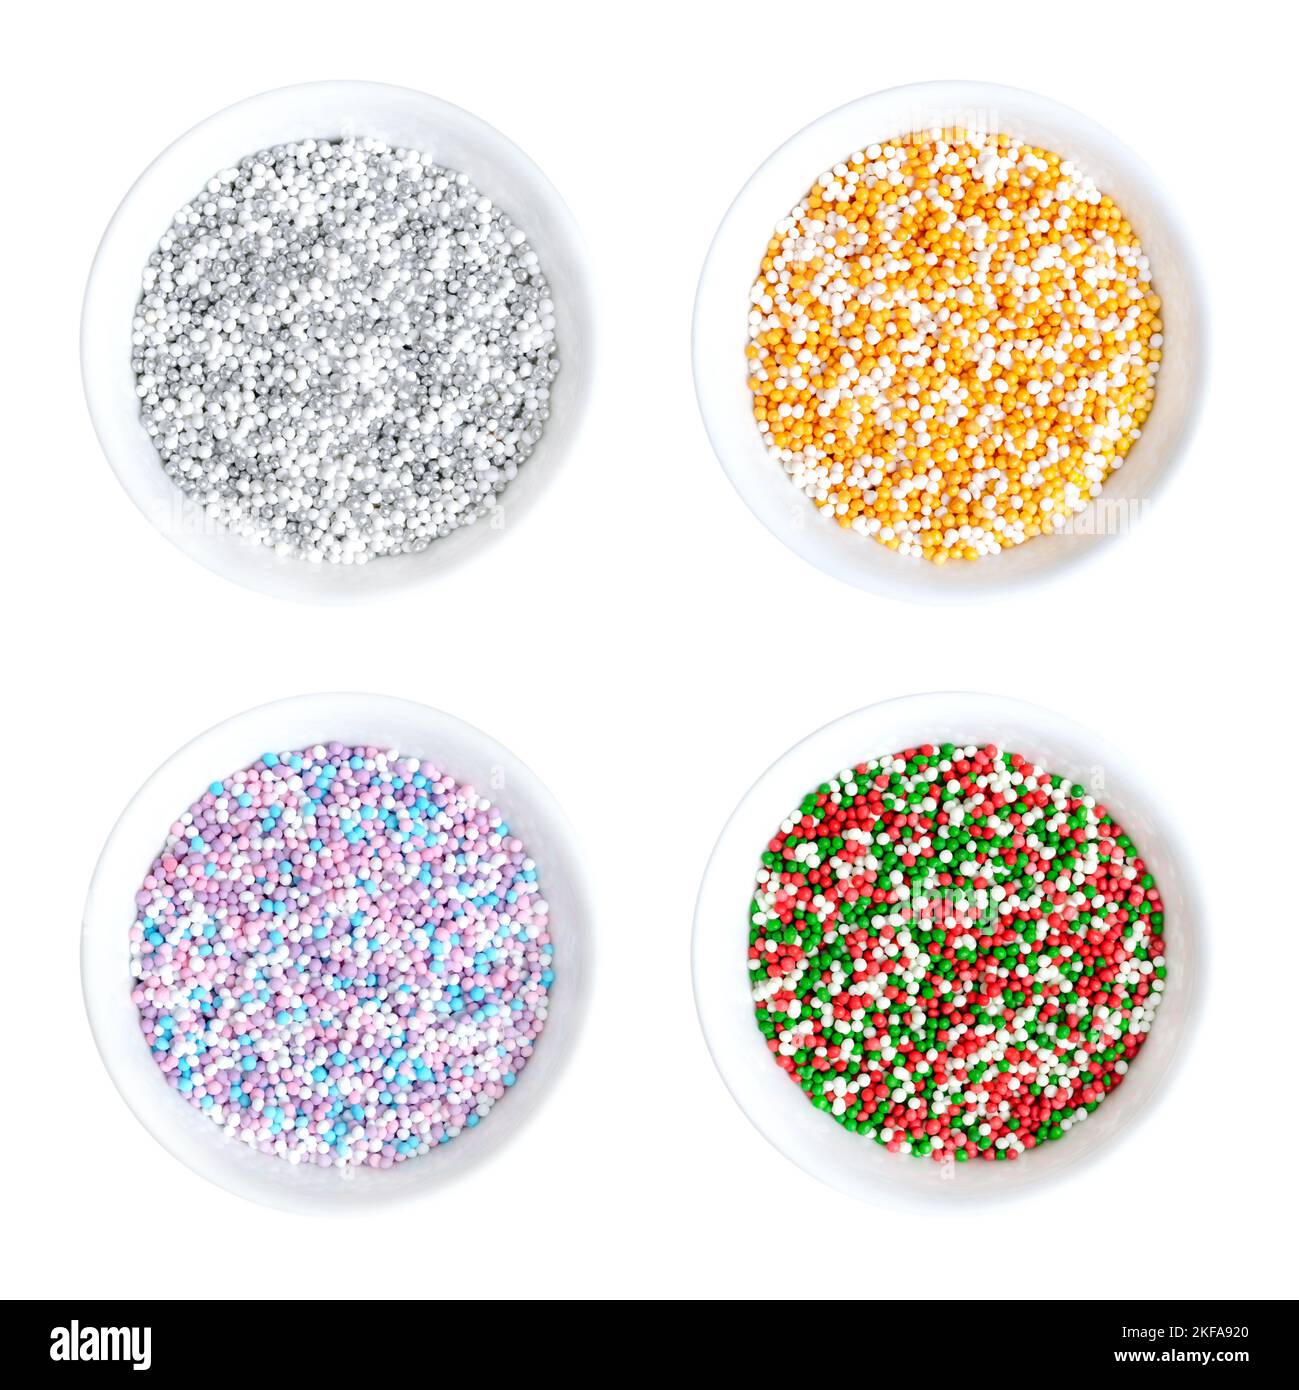 Farbige Nonpareils in weißen Schalen. Vier farbige Mischungen von dekorativen und essbaren Süßwaren aus winzigen Kugeln. Hunderttausende. Stockfoto